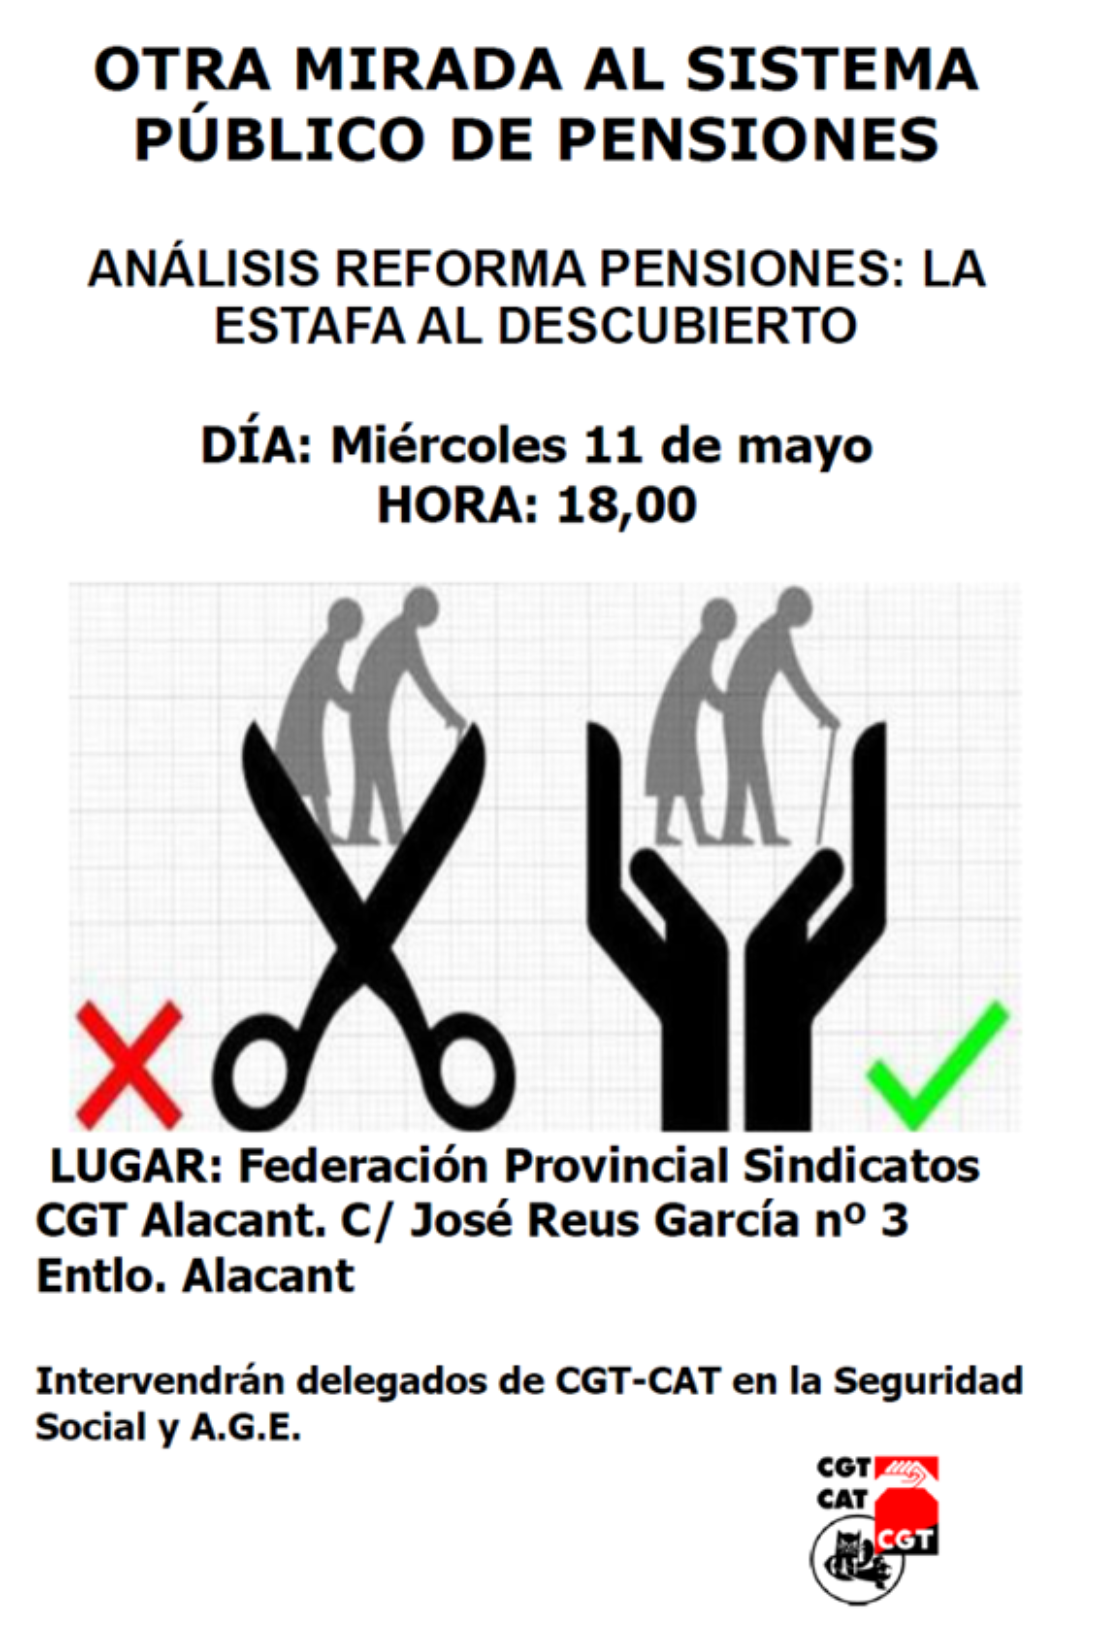 11-m Alacant: Otra mirada al sistema público de pensiones. Análisis reforma pensiones: La estafa al descubierto